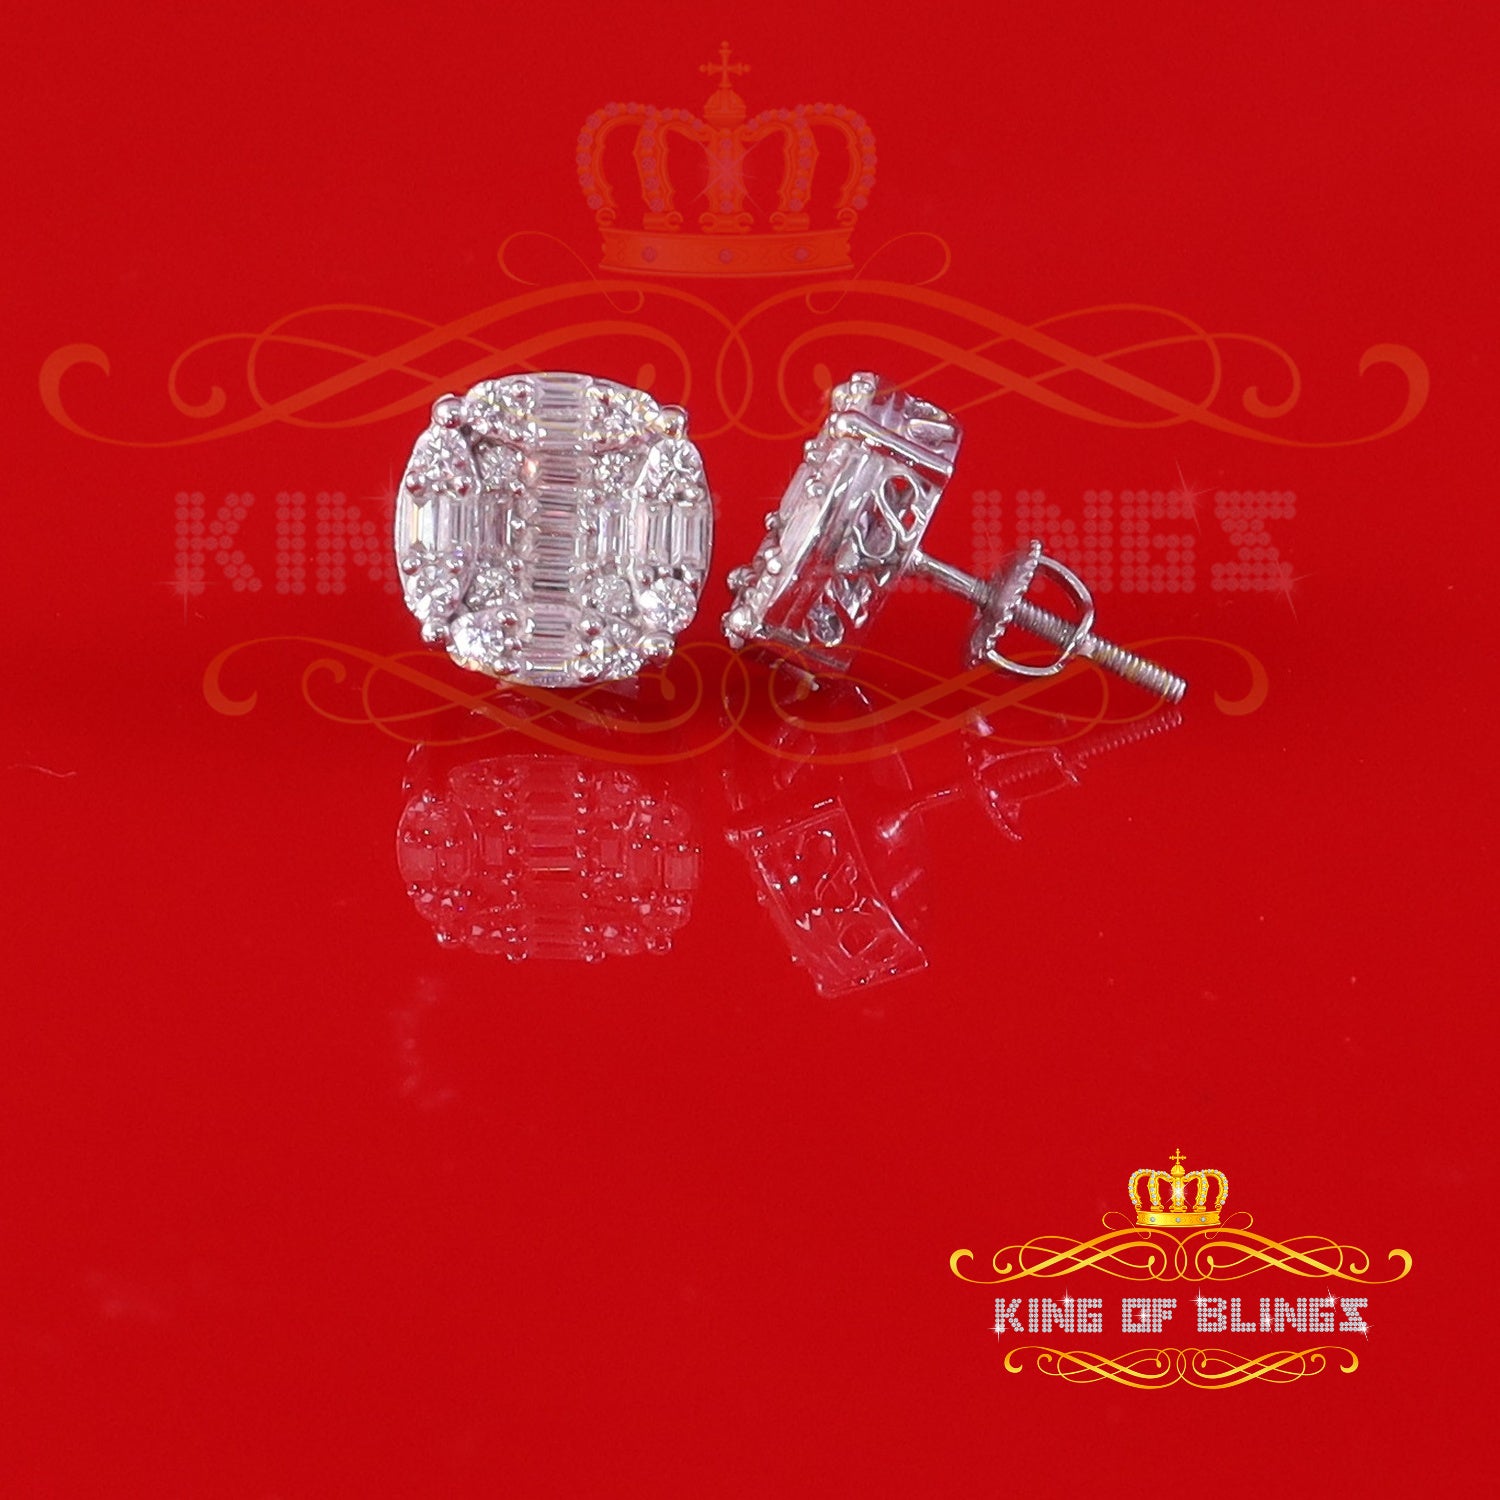 King of Bling's 925 Silver White 2.00ct VVS 'D' Moissanite Round Earrings Men's/Womens KING OF BLINGS